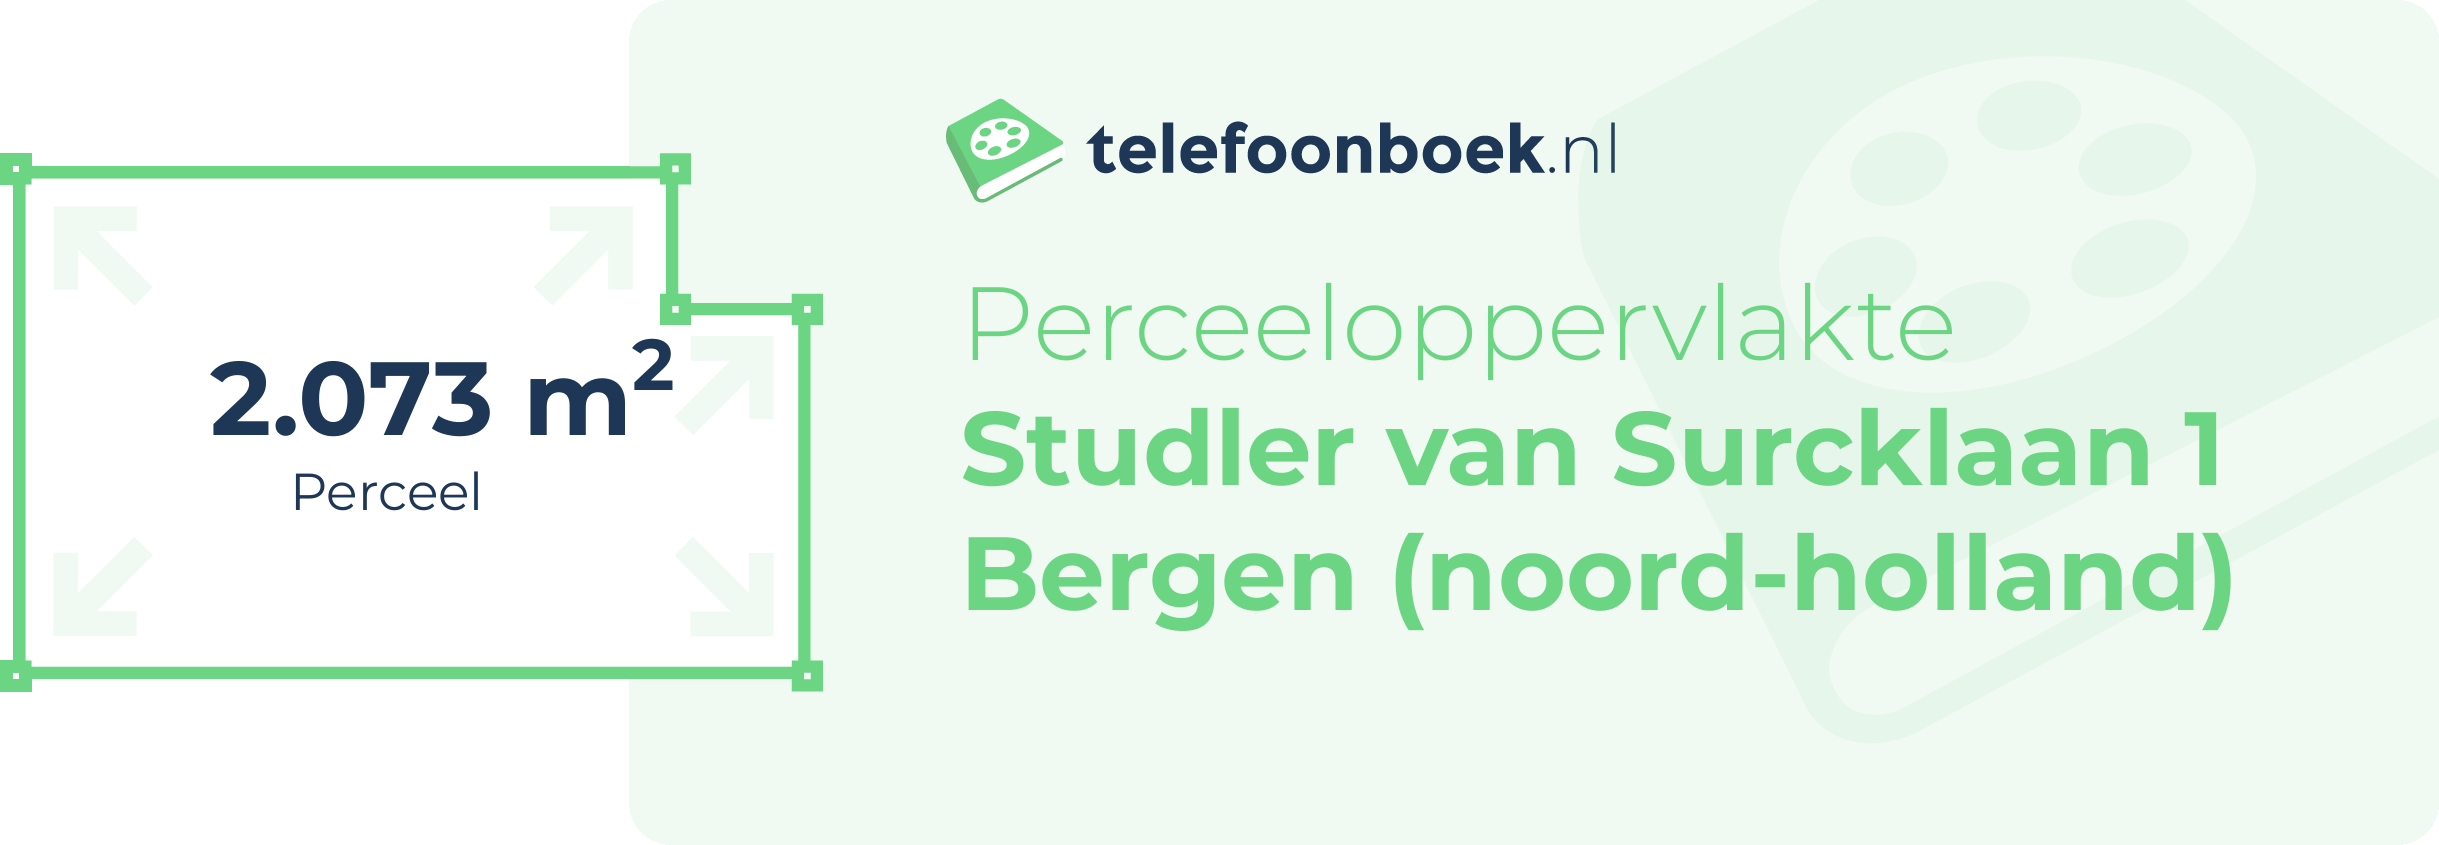 Perceeloppervlakte Studler Van Surcklaan 1 Bergen (Noord-Holland)